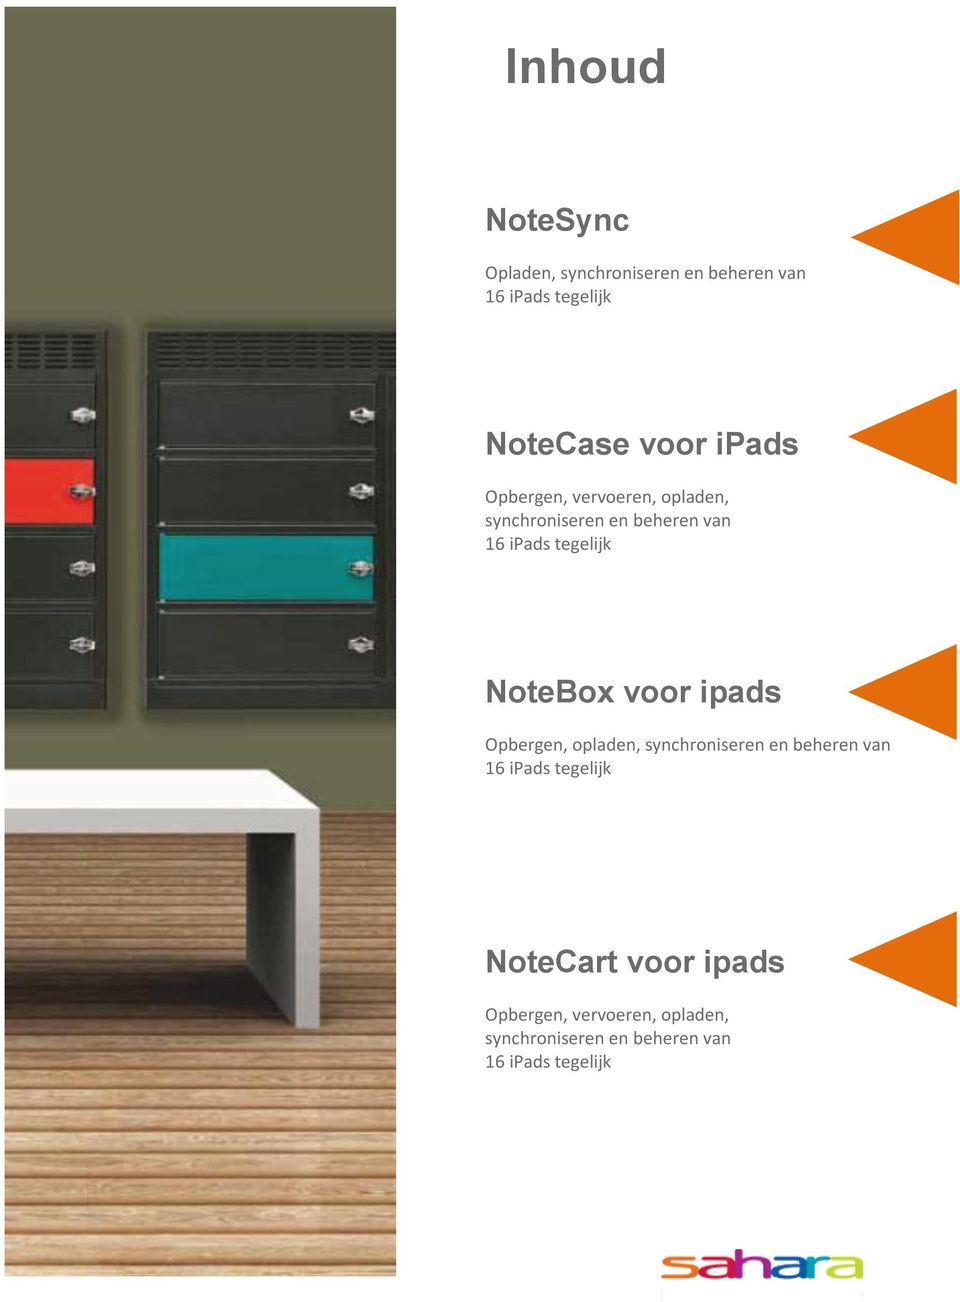 NoteBox voor ipads Opbergen, opladen, synchroniseren en beheren van 16 ipads tegelijk